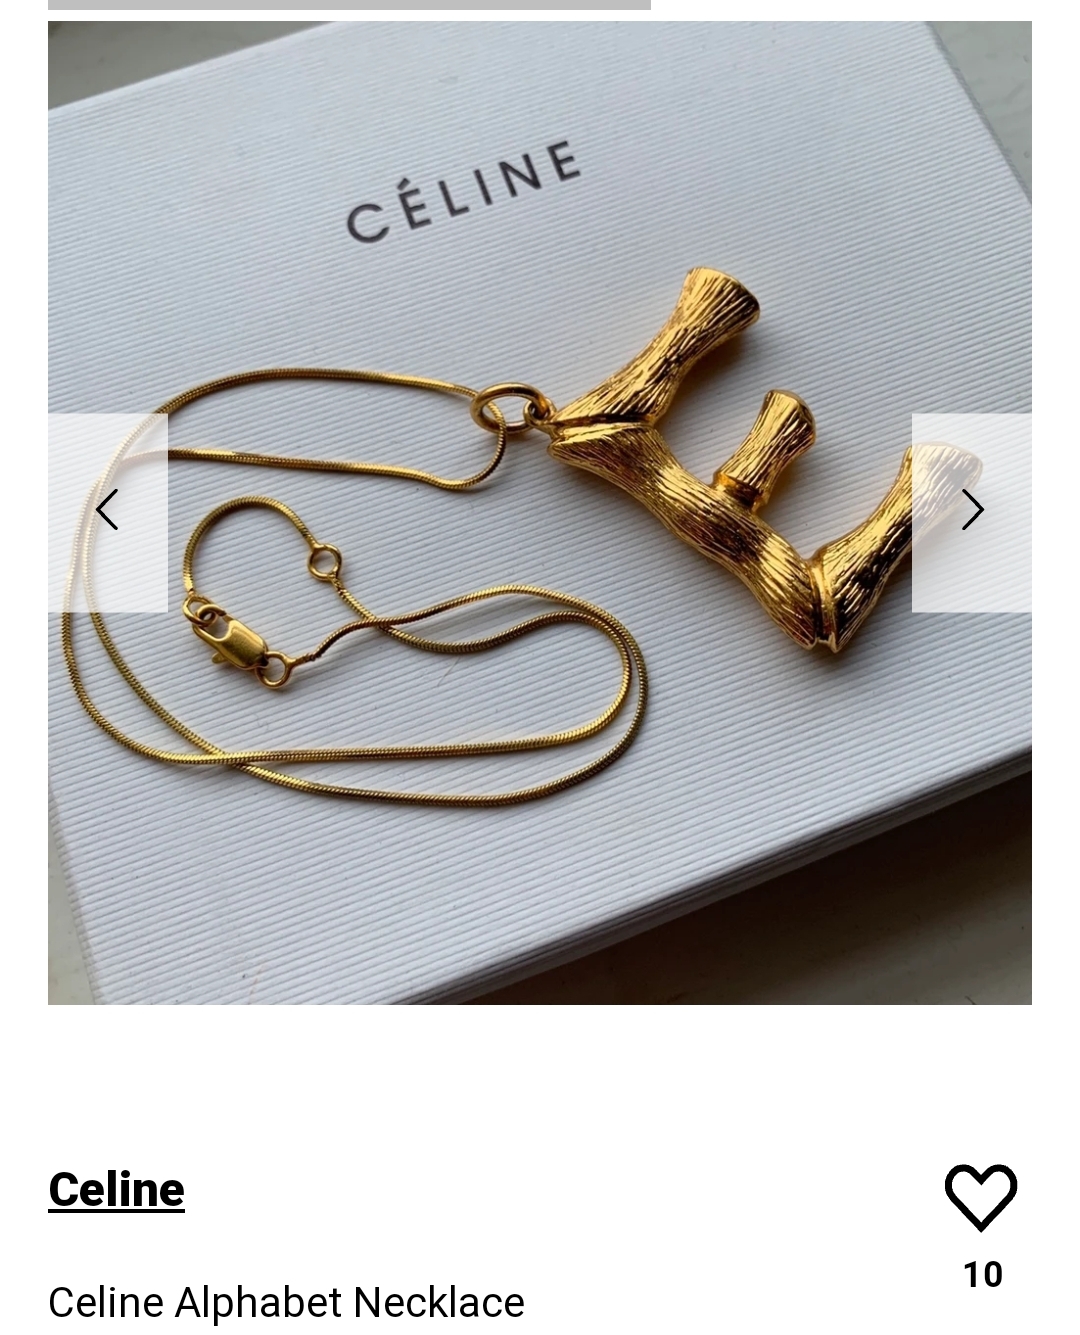 Celine necklace 项链